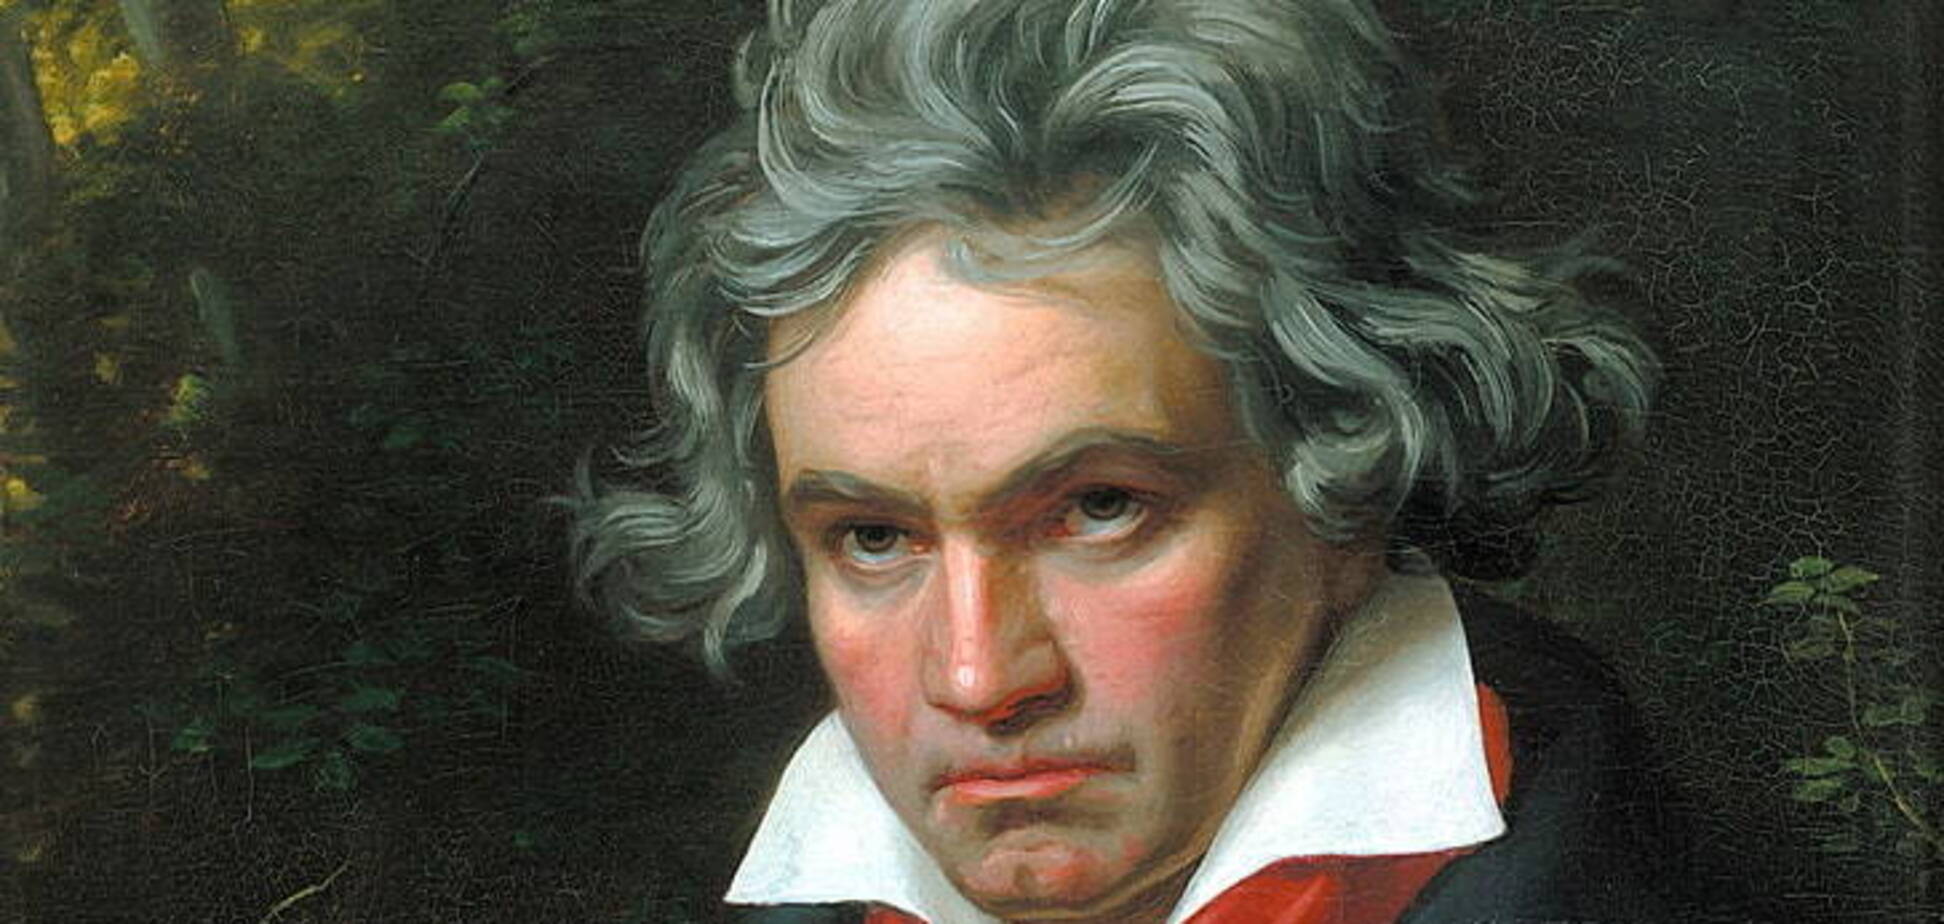 Раскрыта тайна смерти Бетховена: он действительно отравился свинцом, но умер не от этого